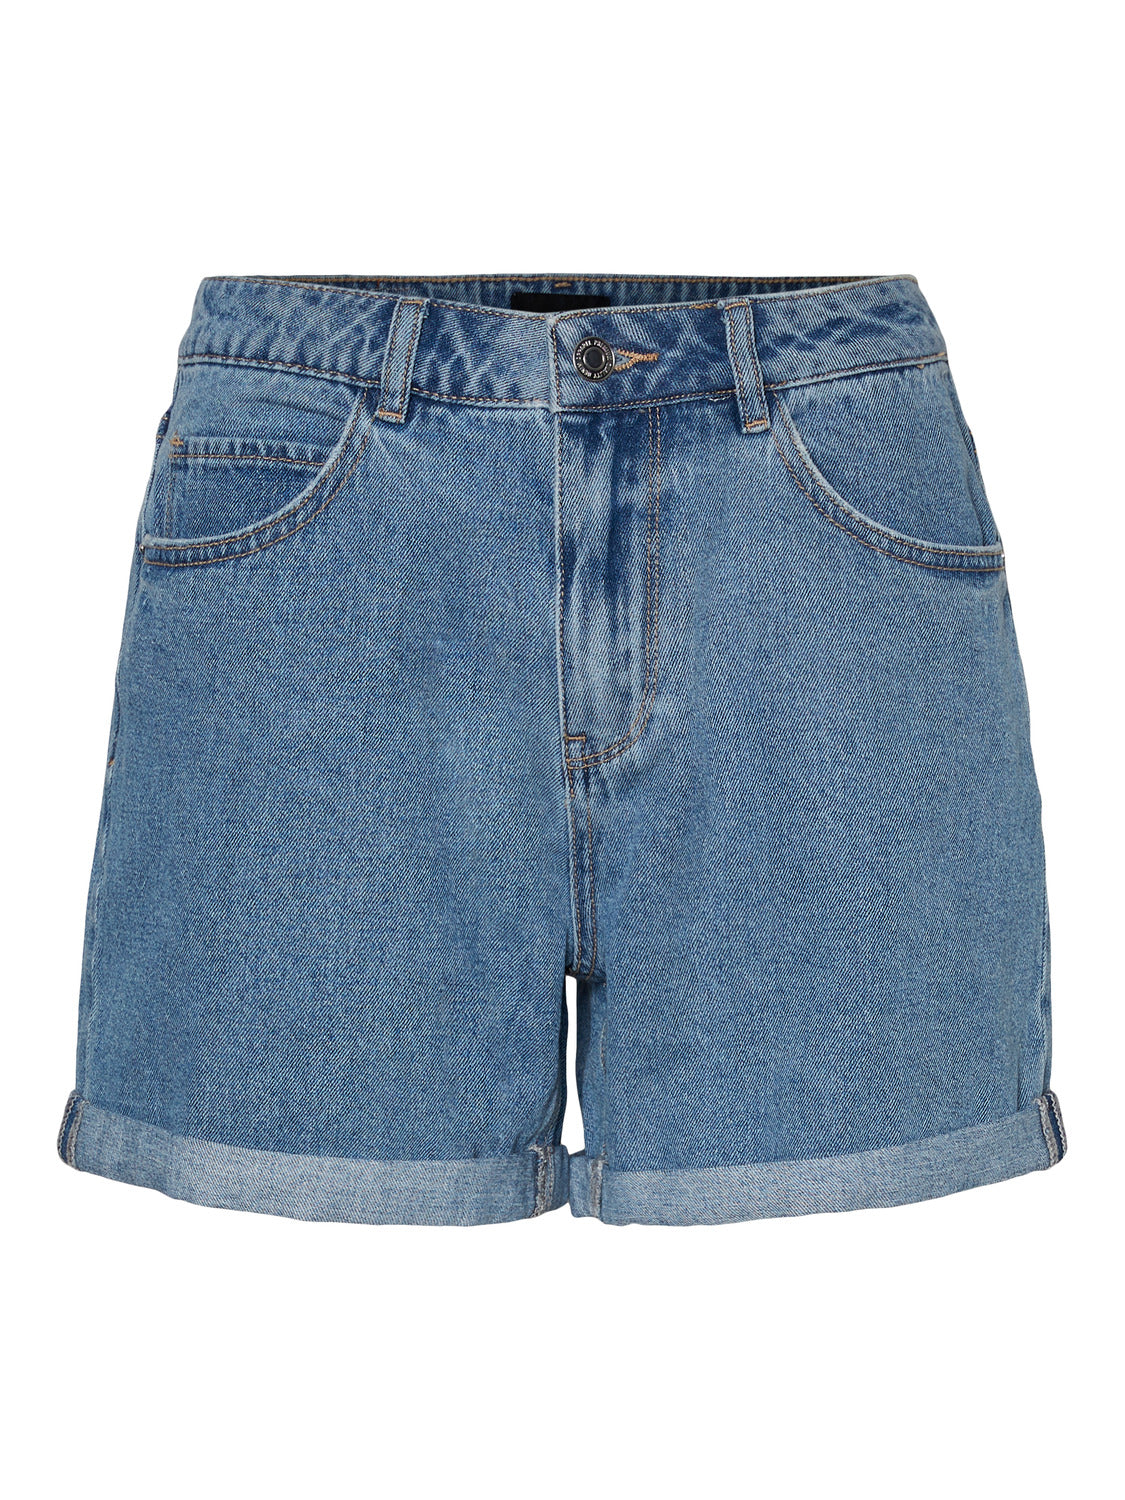 VMNINETEEN Shorts - light blue denim